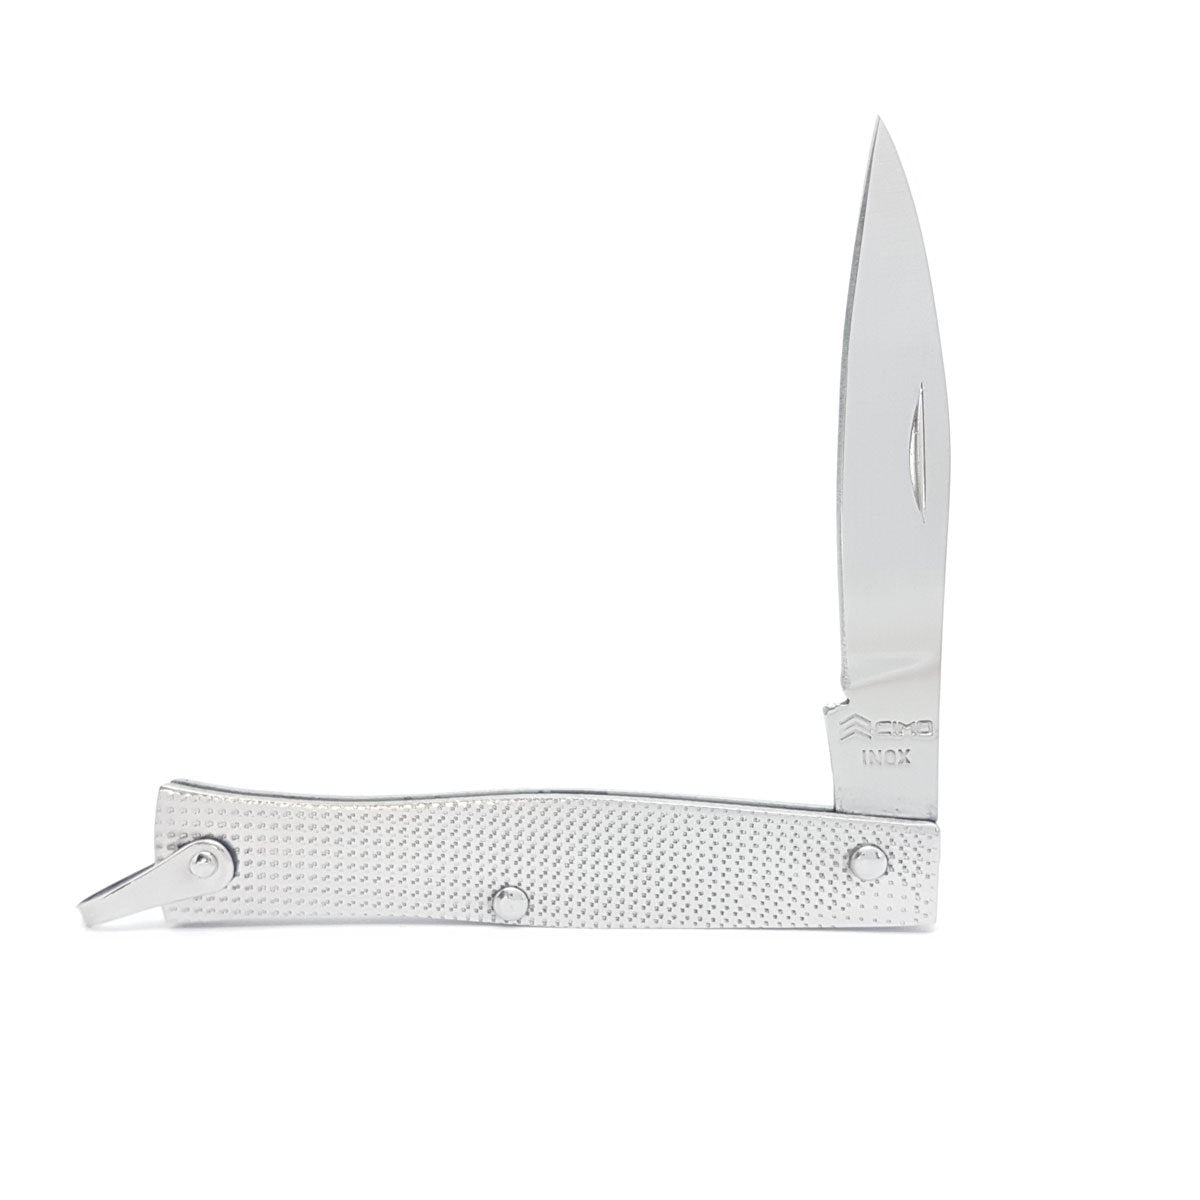 Canivete Cimo Inox Tradicional - 220/4